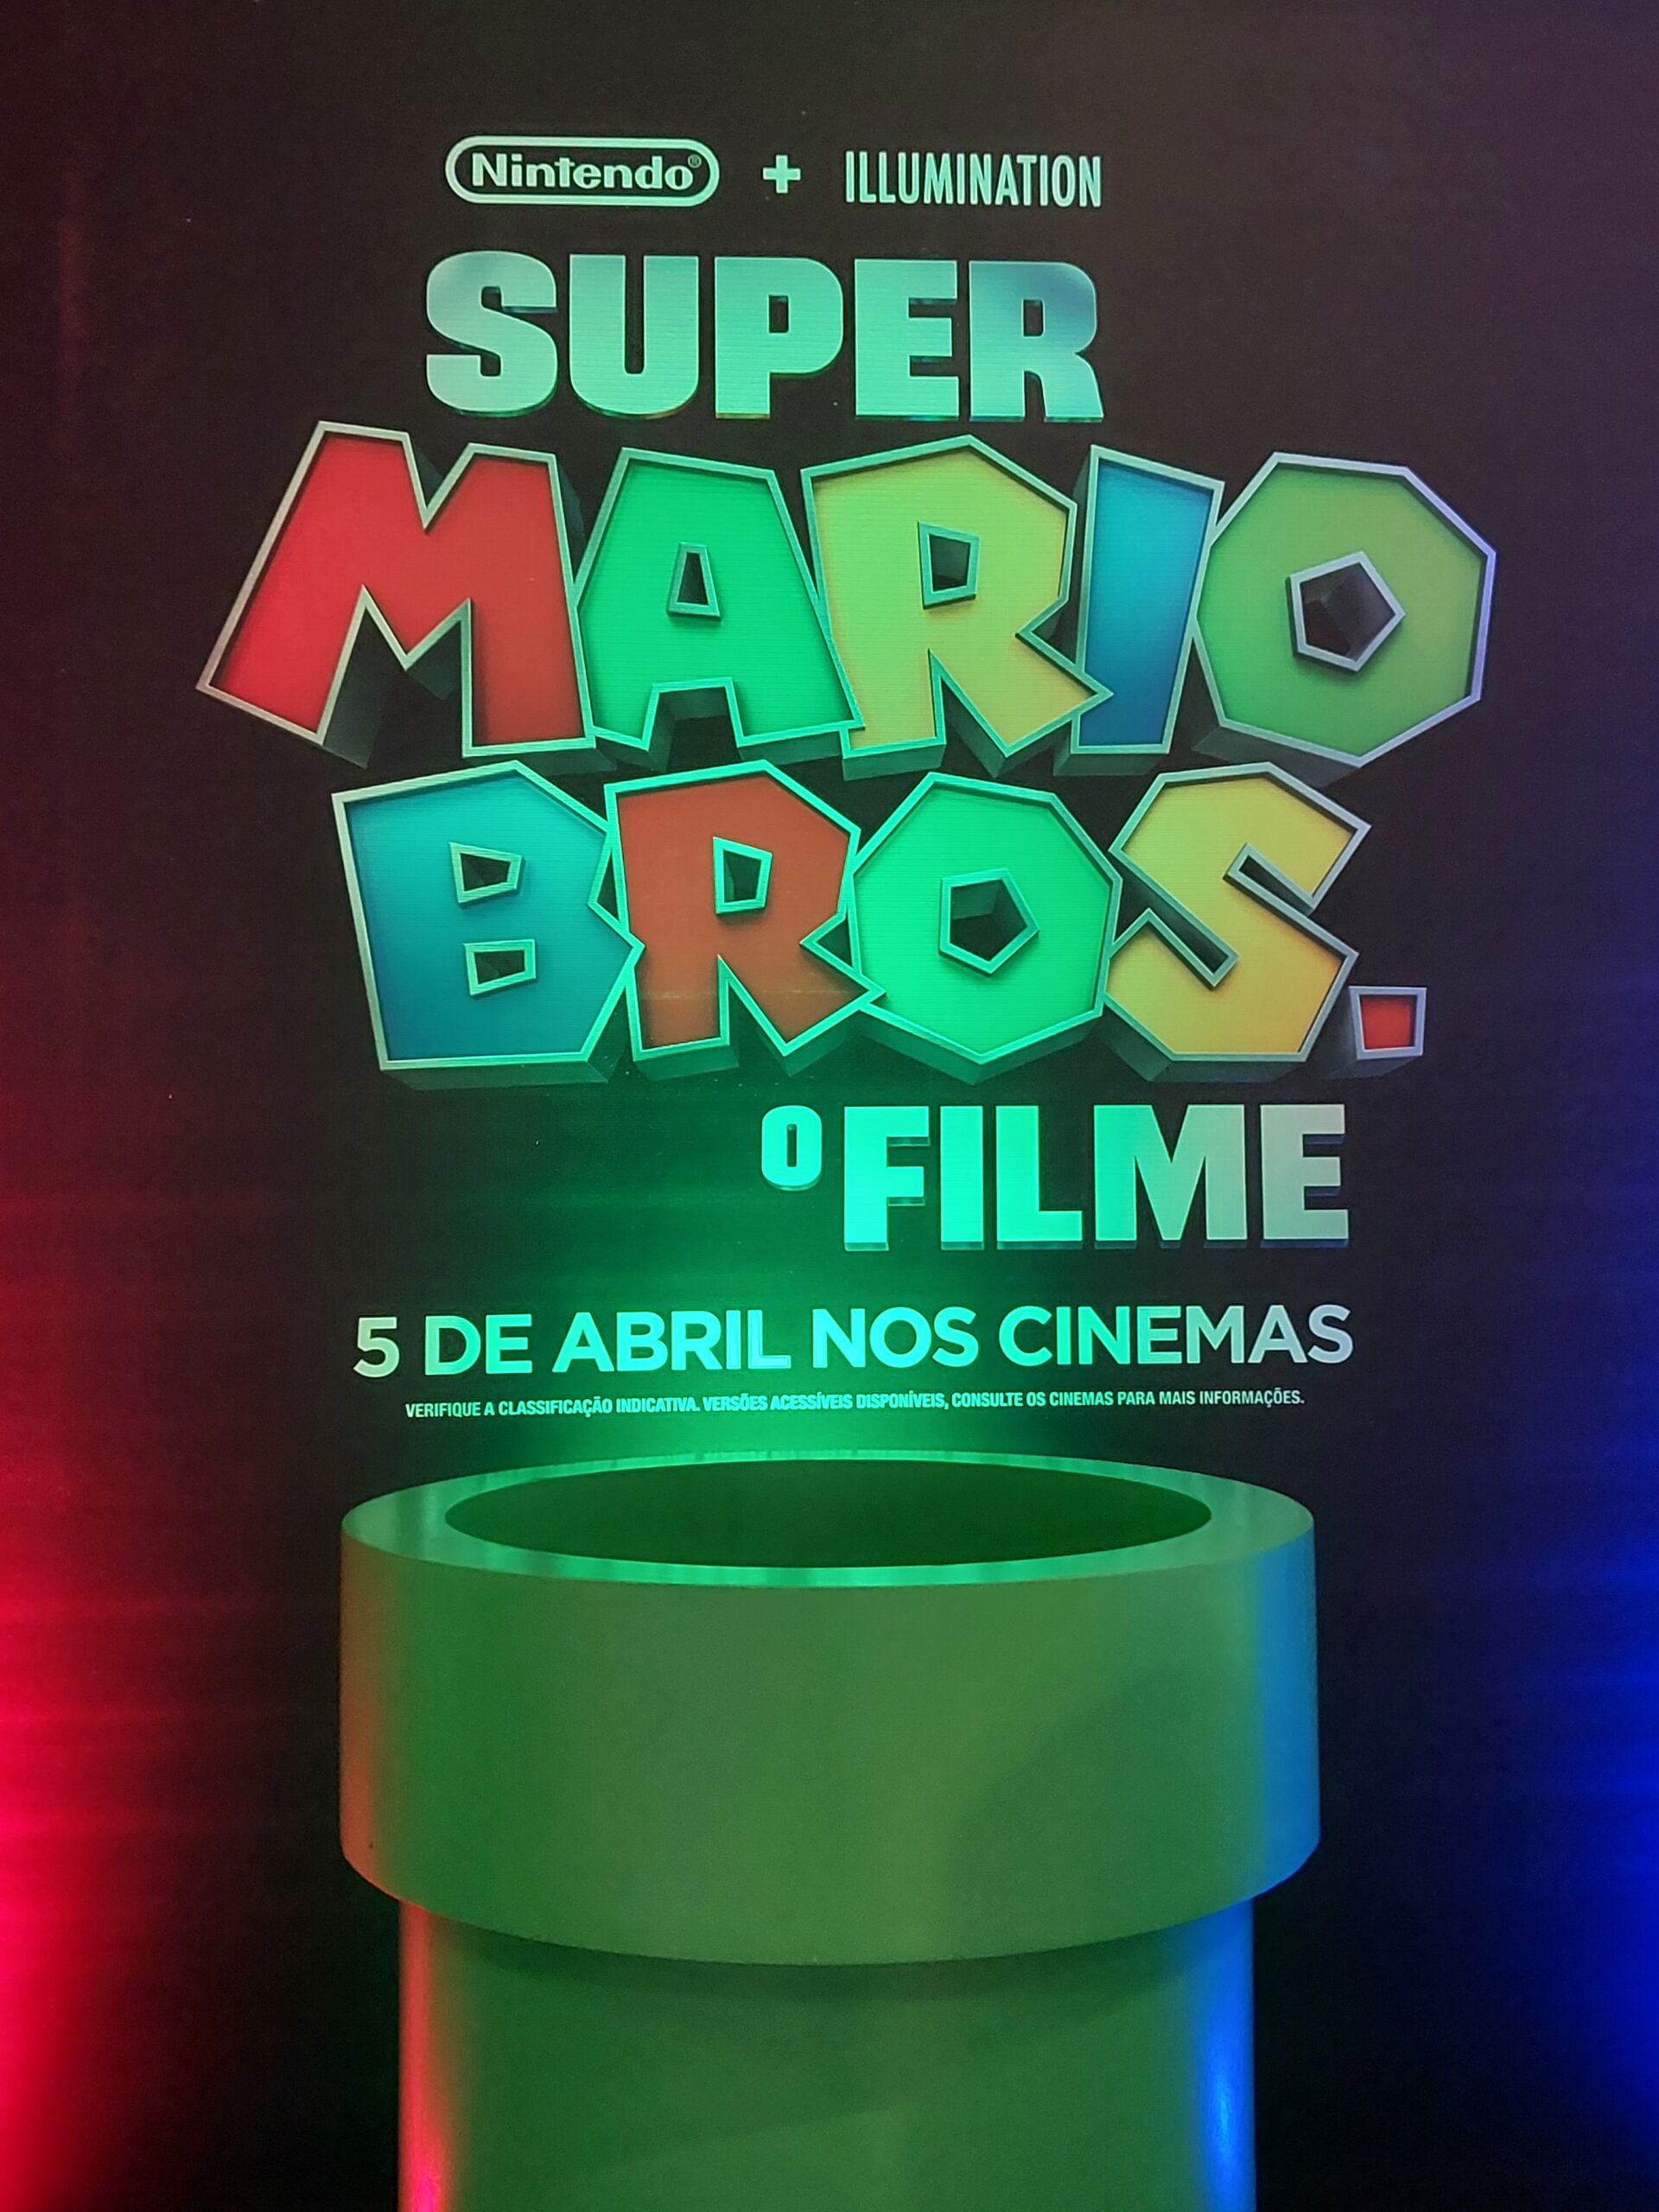 Nota de Super Mario Bros.: O Filme no Metacritic é revelada